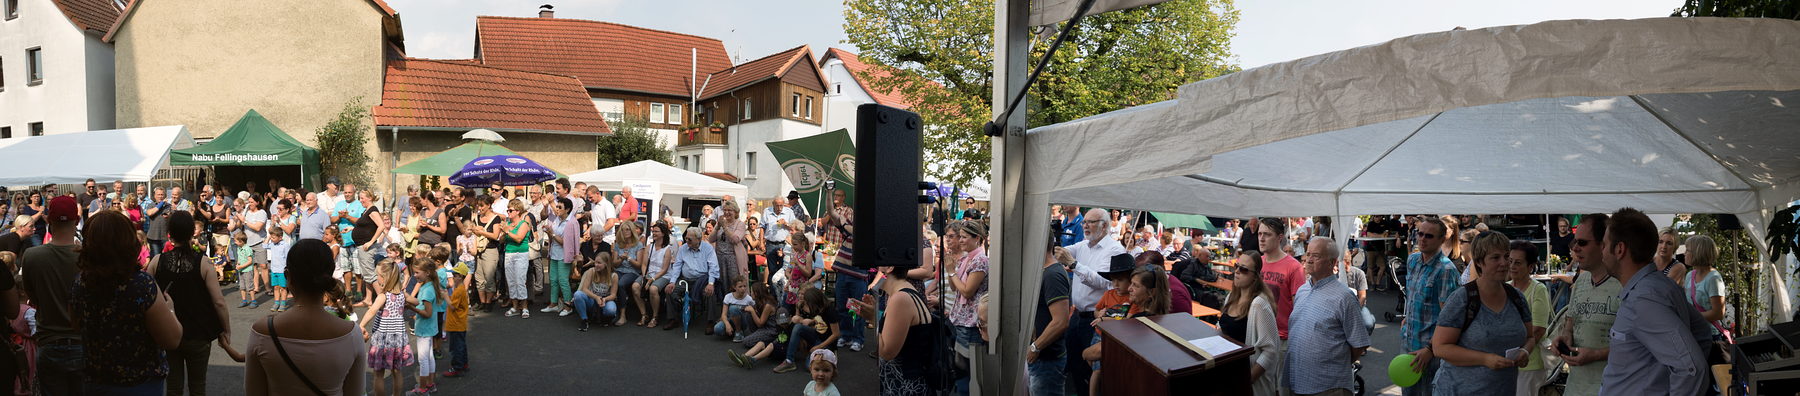 2017-08-26 - Brunnenfest Pa01.jpg